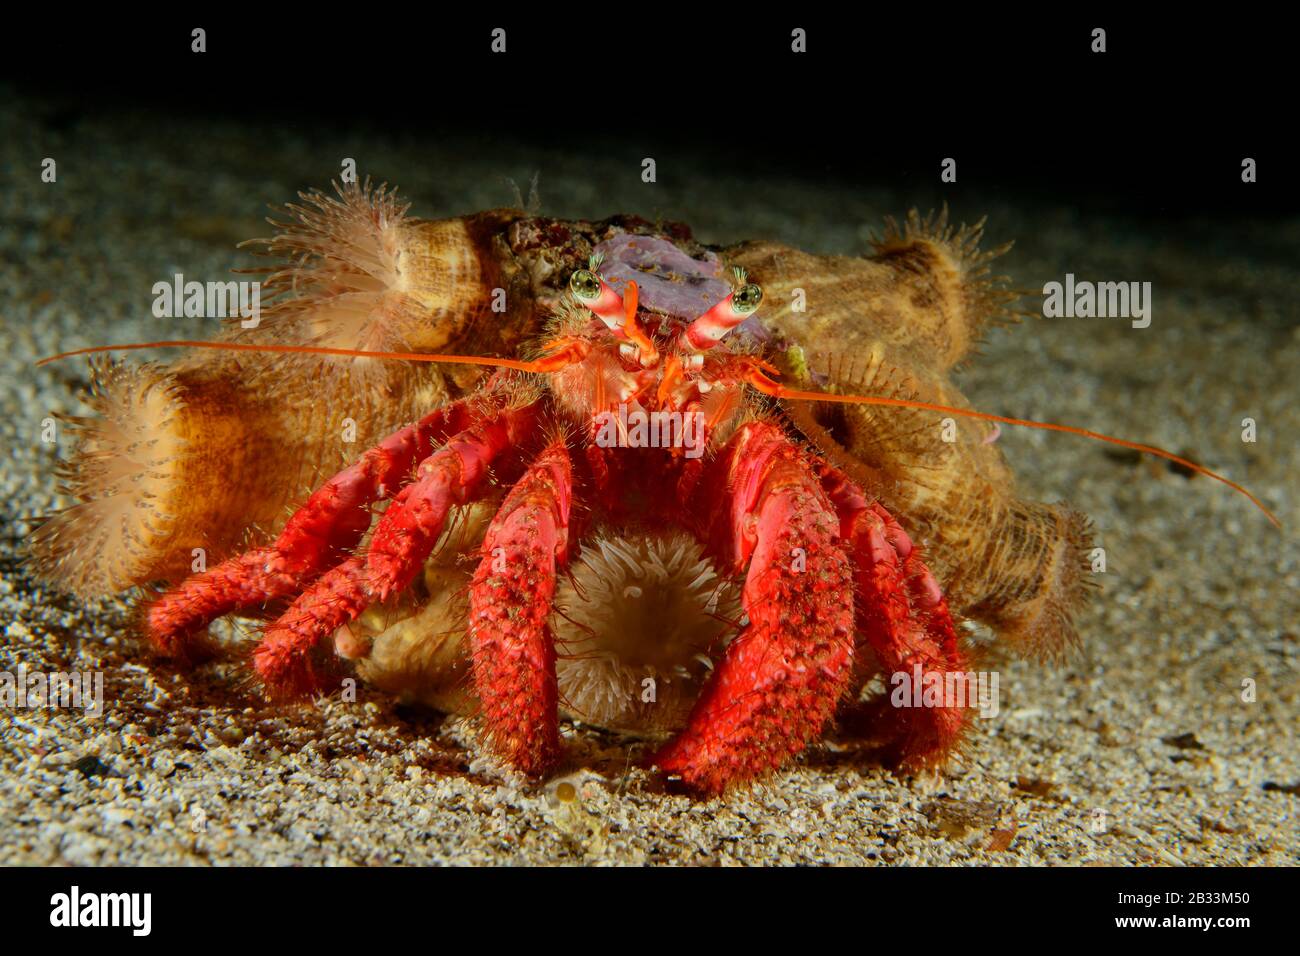 Red hermit crab, Dardanus arrosor, with Hermit anemone,  Calliactis parasitica, Tamariu, Costa Brava, Spain, Mediterranean Sea Stock Photo